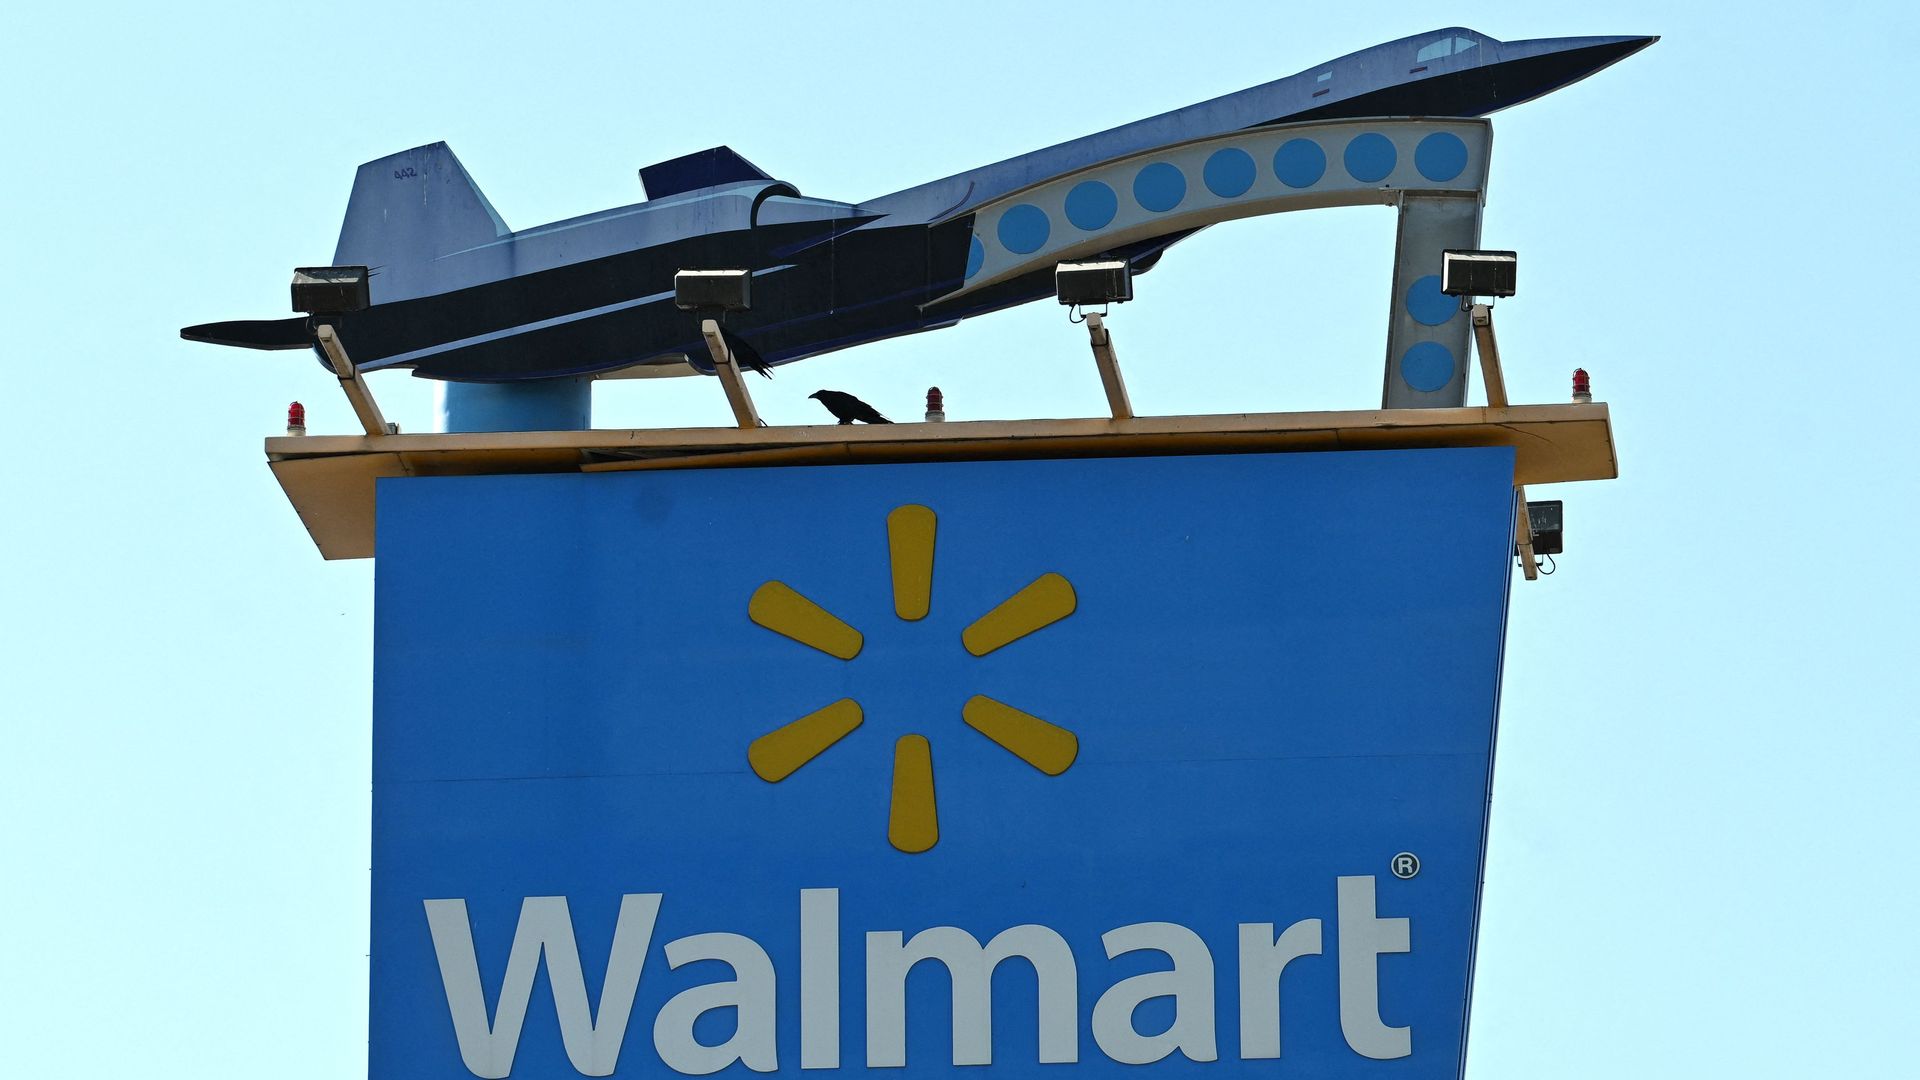 Walmart banner under a large plane